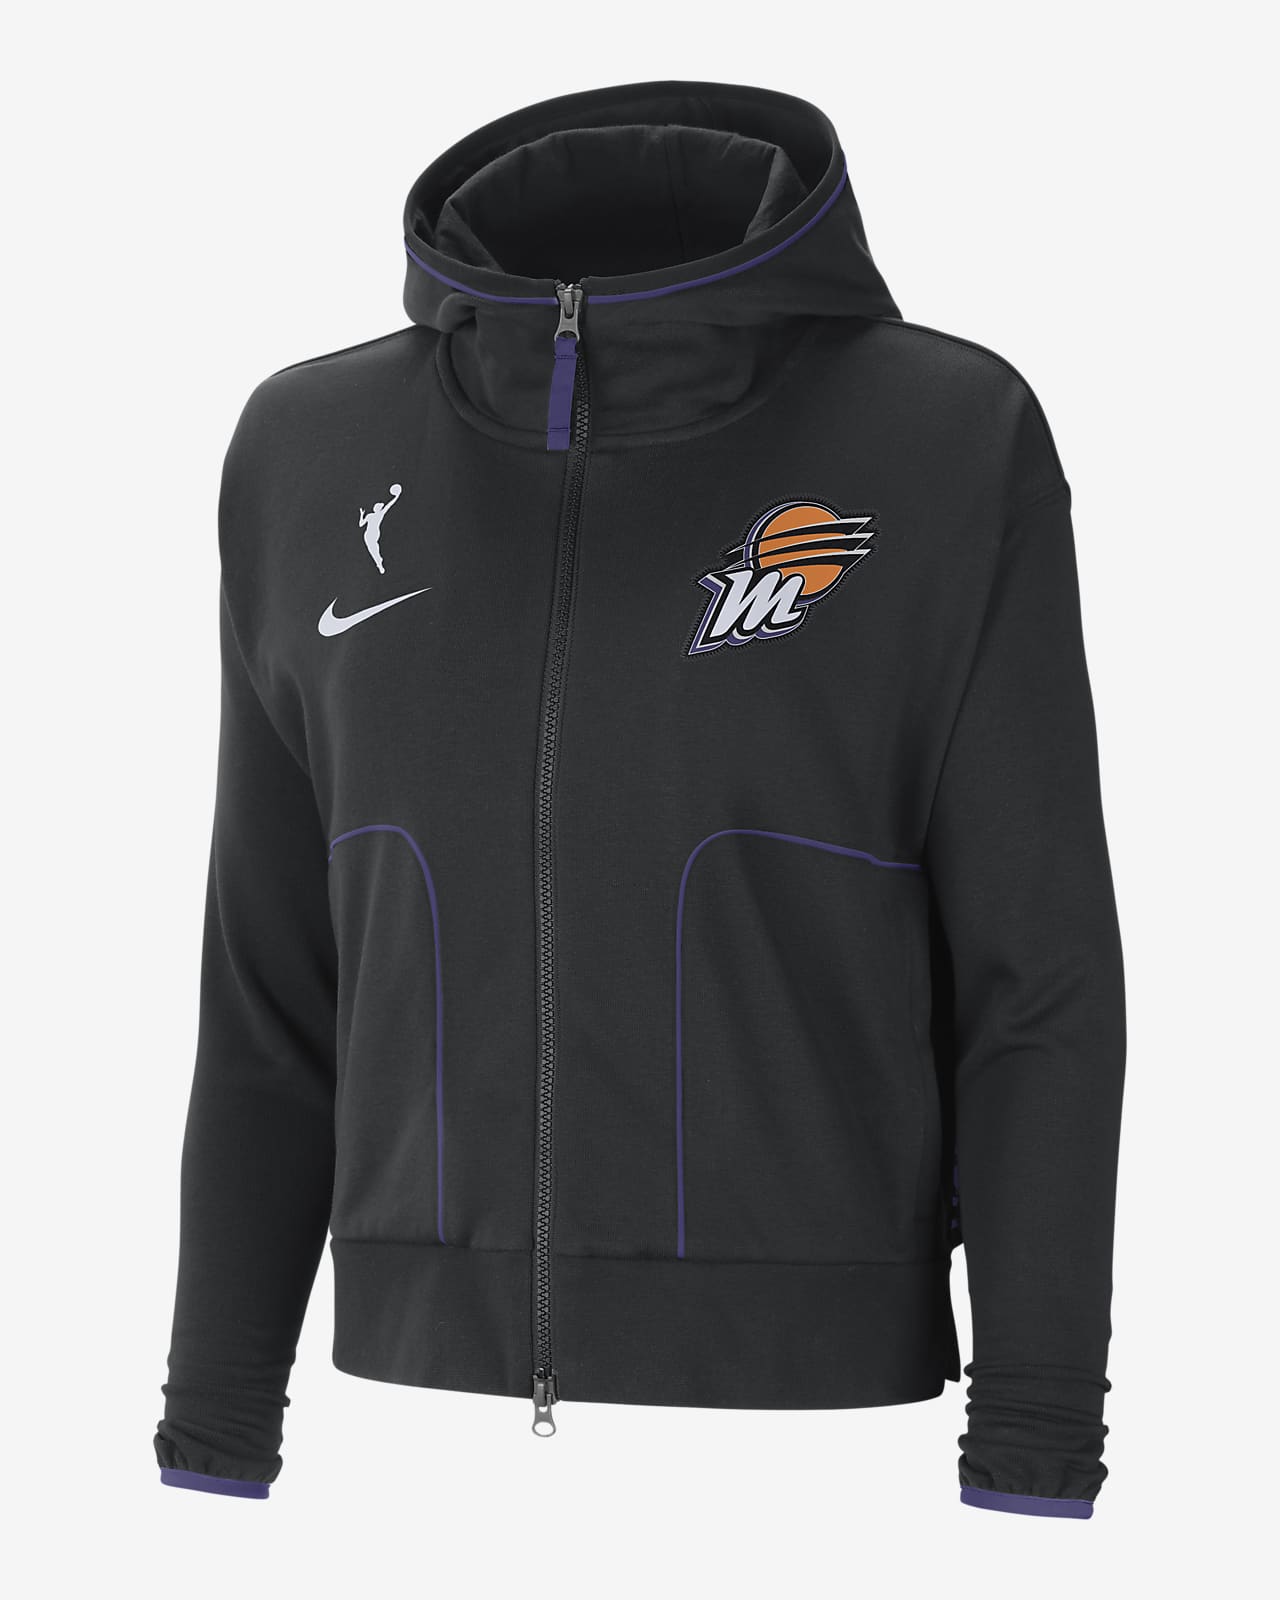 Phoenix Mercury Women's Nike WNBA Knit Jacket